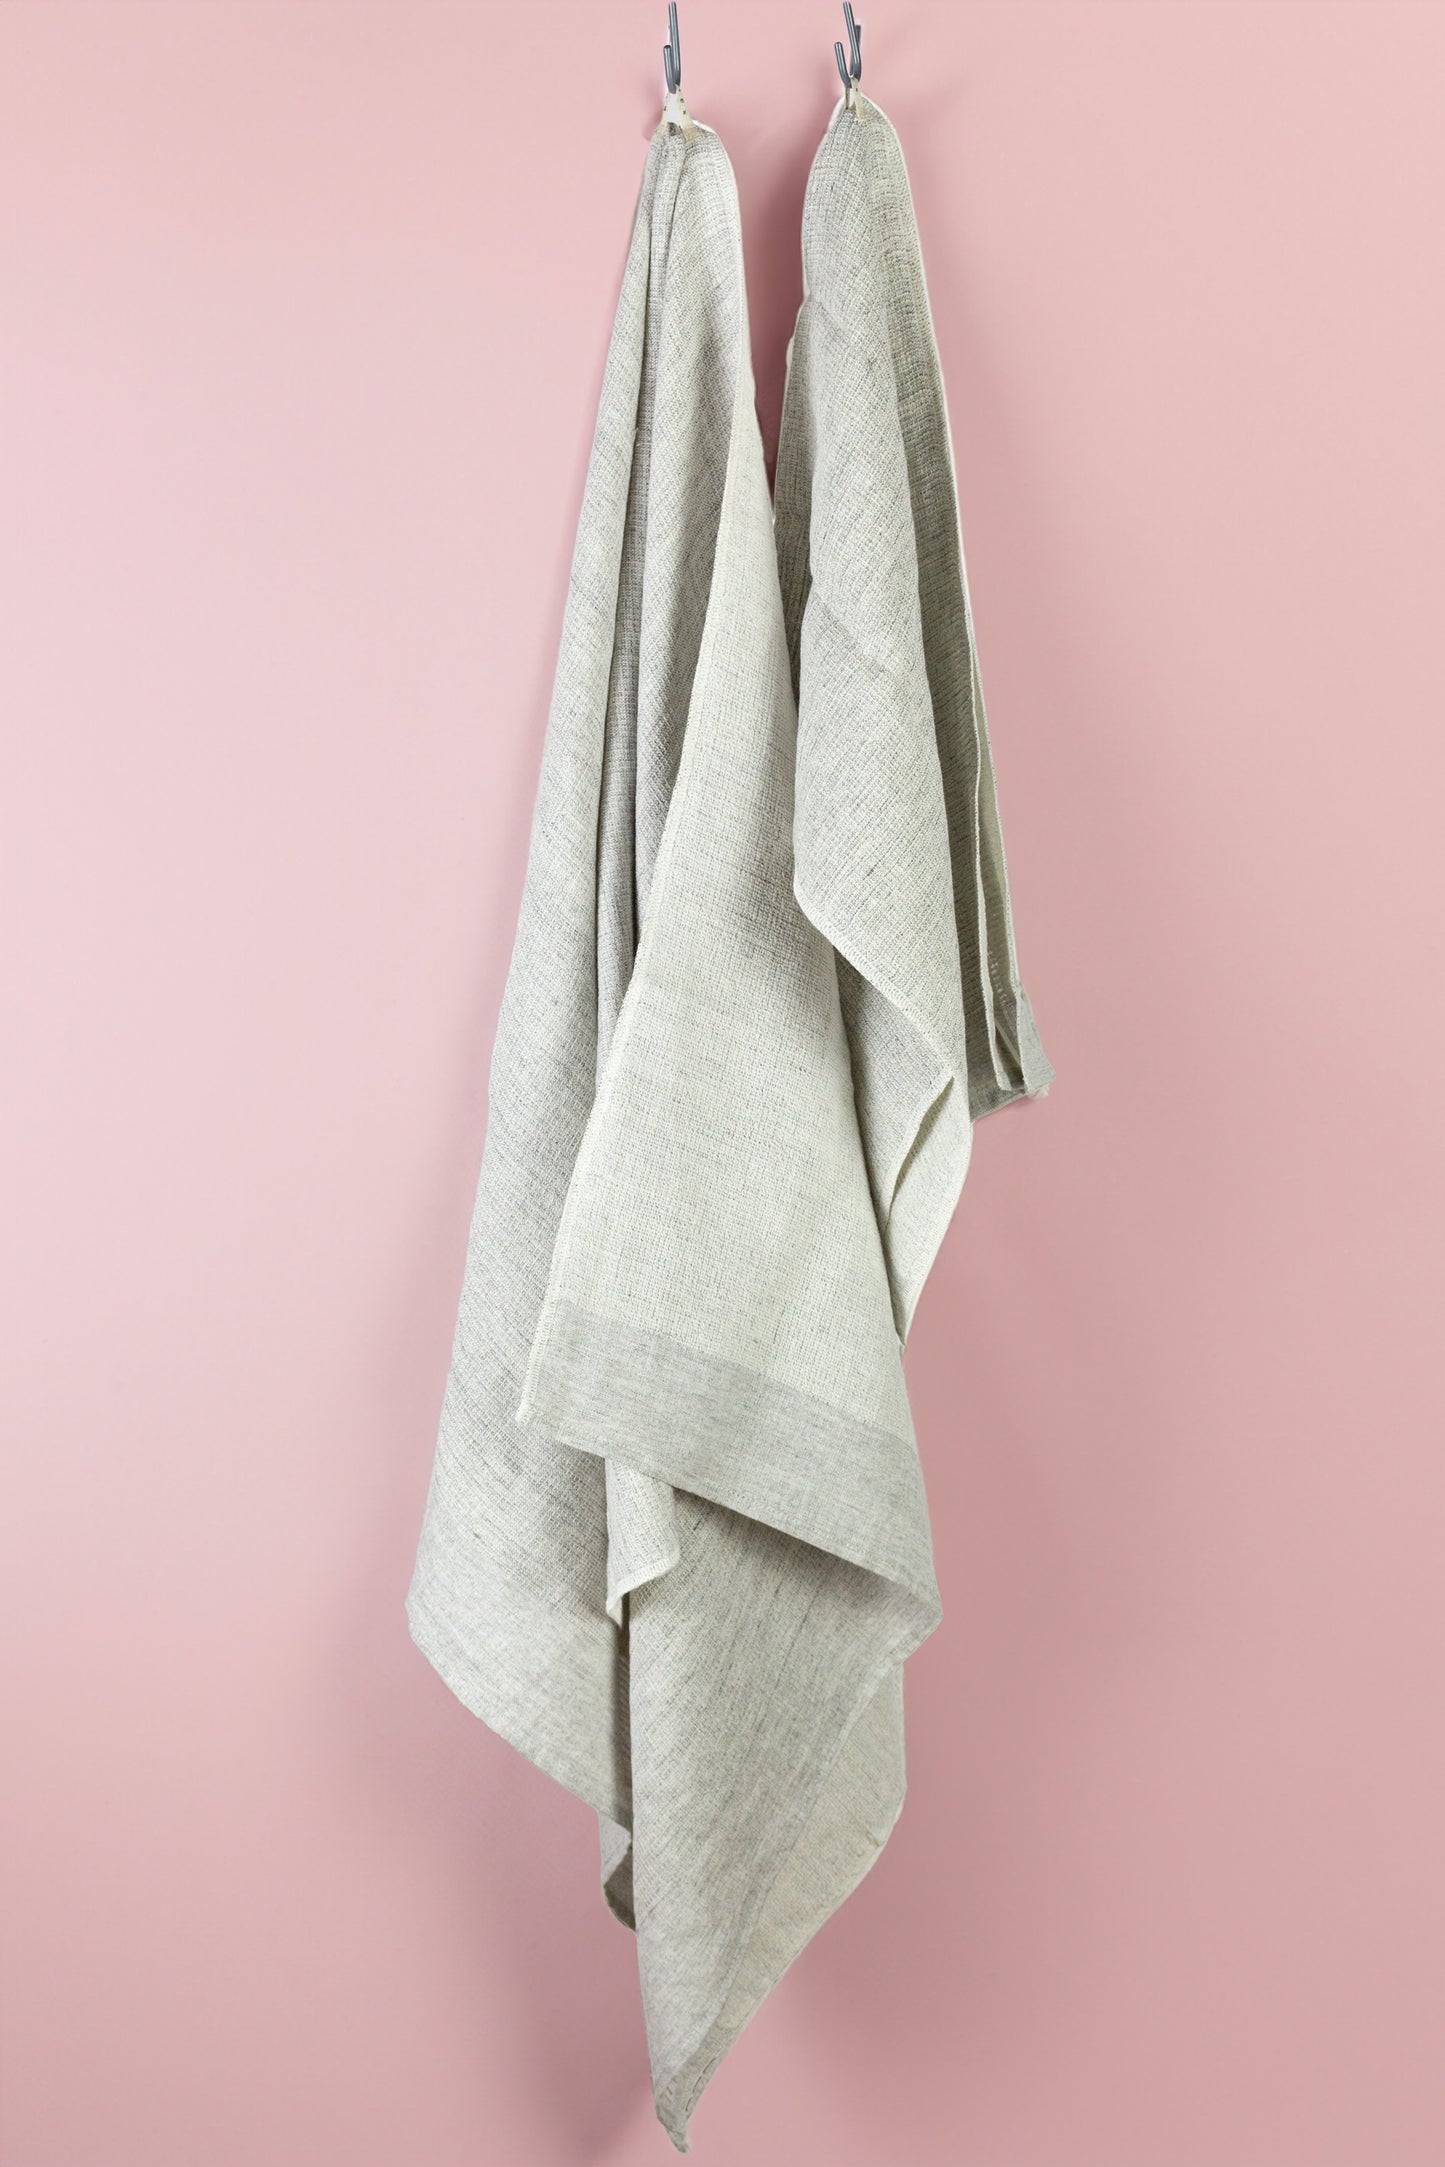 Moku Linen white-grey - Lightweight Linen Towel Tenugui